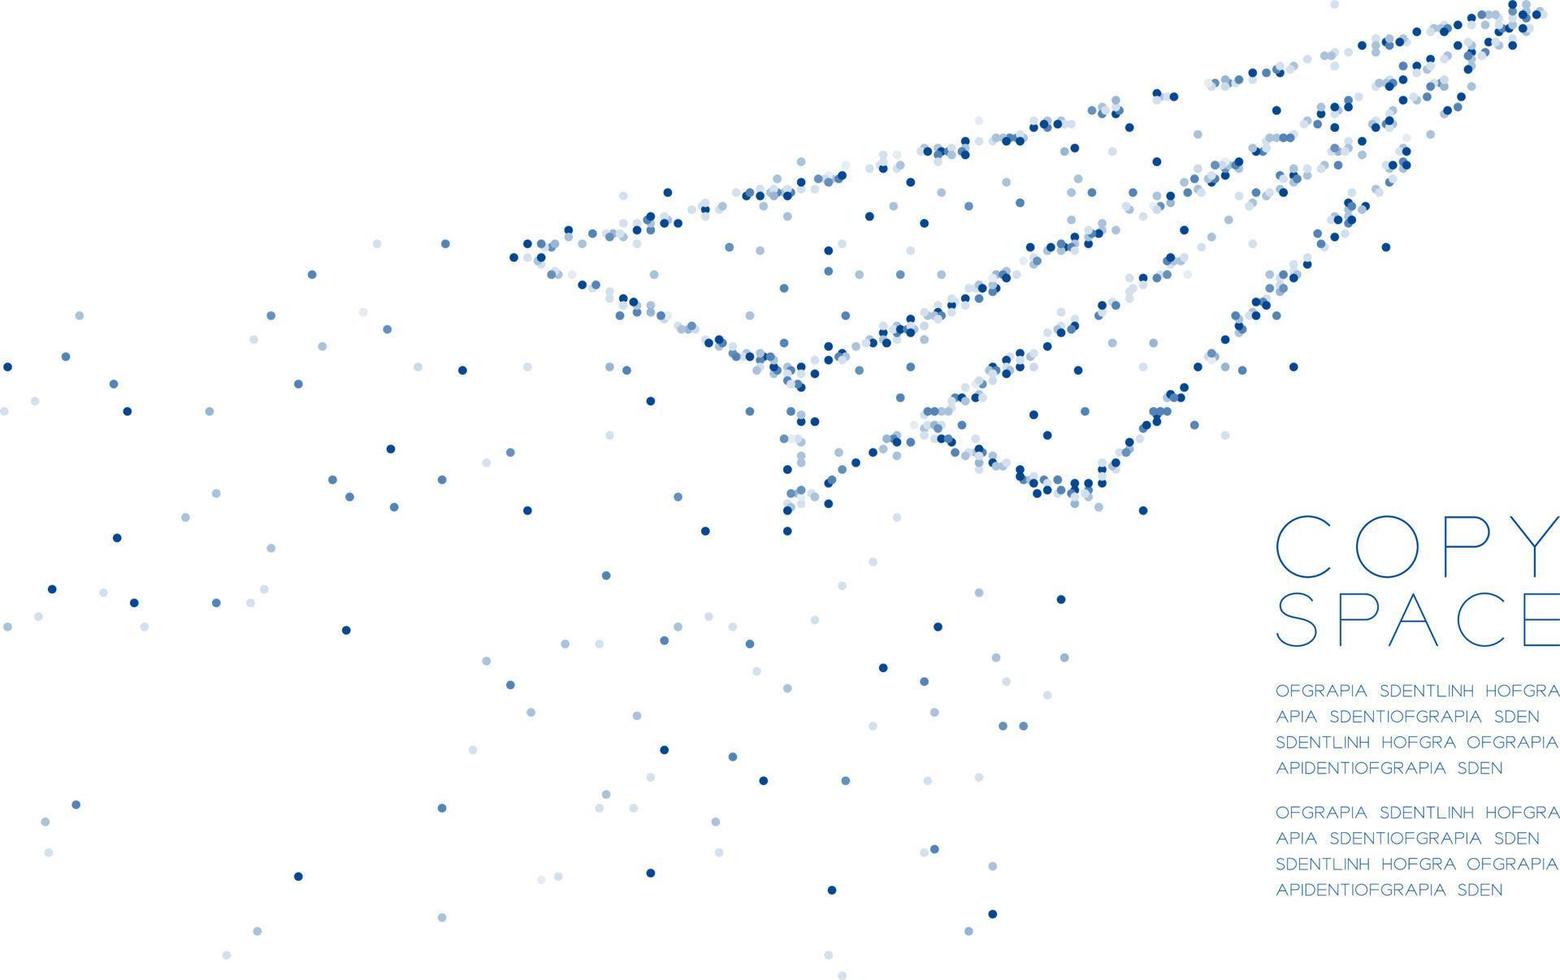 abstracte geometrische cirkel stip molecuul deeltje patroon papier vliegtuig vorm, vr technologie business visie concept ontwerp blauwe kleur illustratie geïsoleerd op een witte achtergrond met kopie ruimte, vector eps